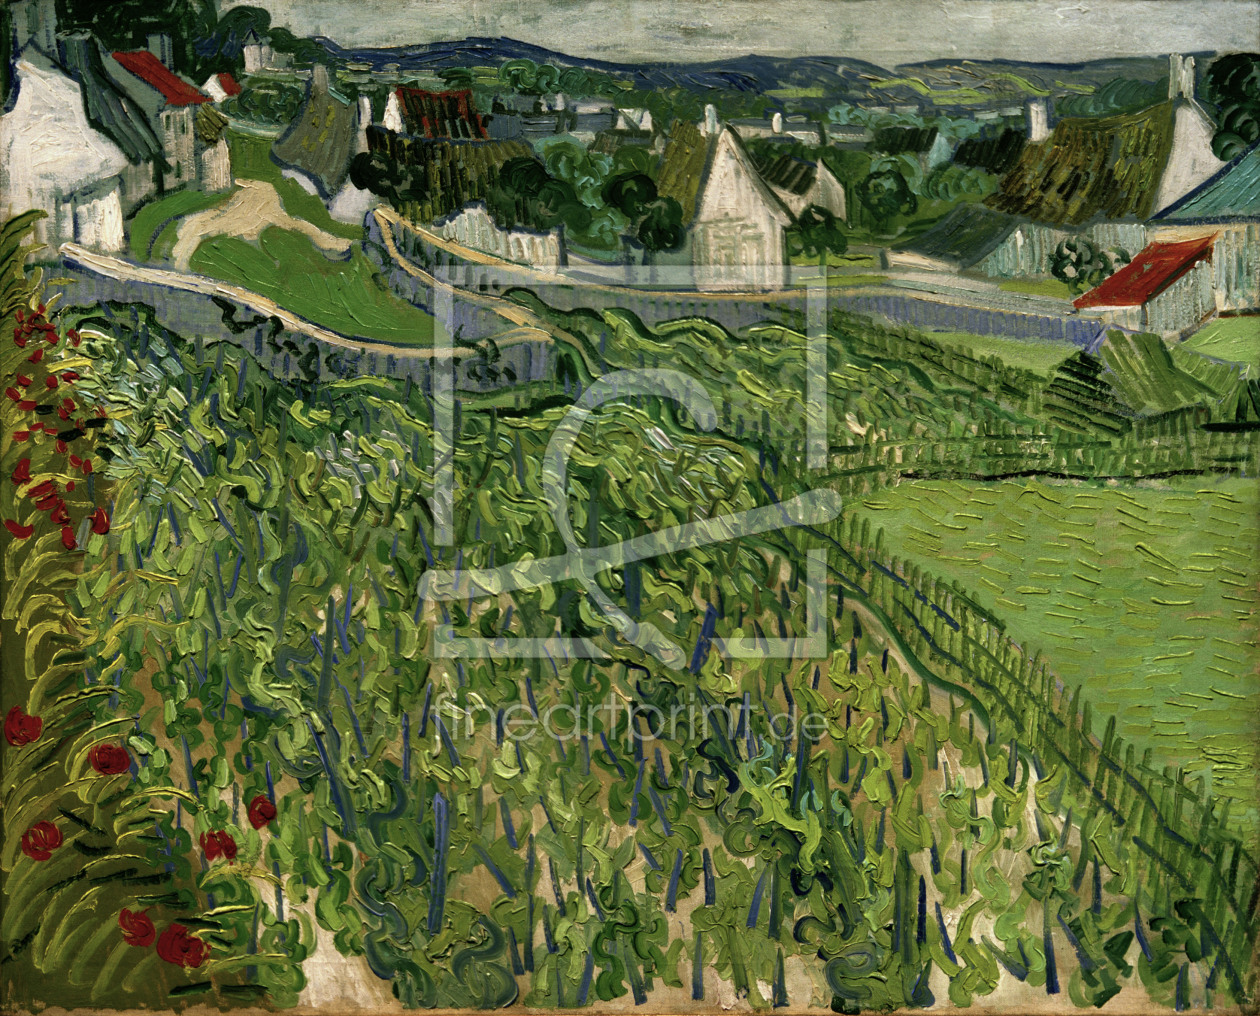 Bild-Nr.: 30002882 van Gogh / Vineyards at Auvers / 1890 erstellt von van Gogh, Vincent